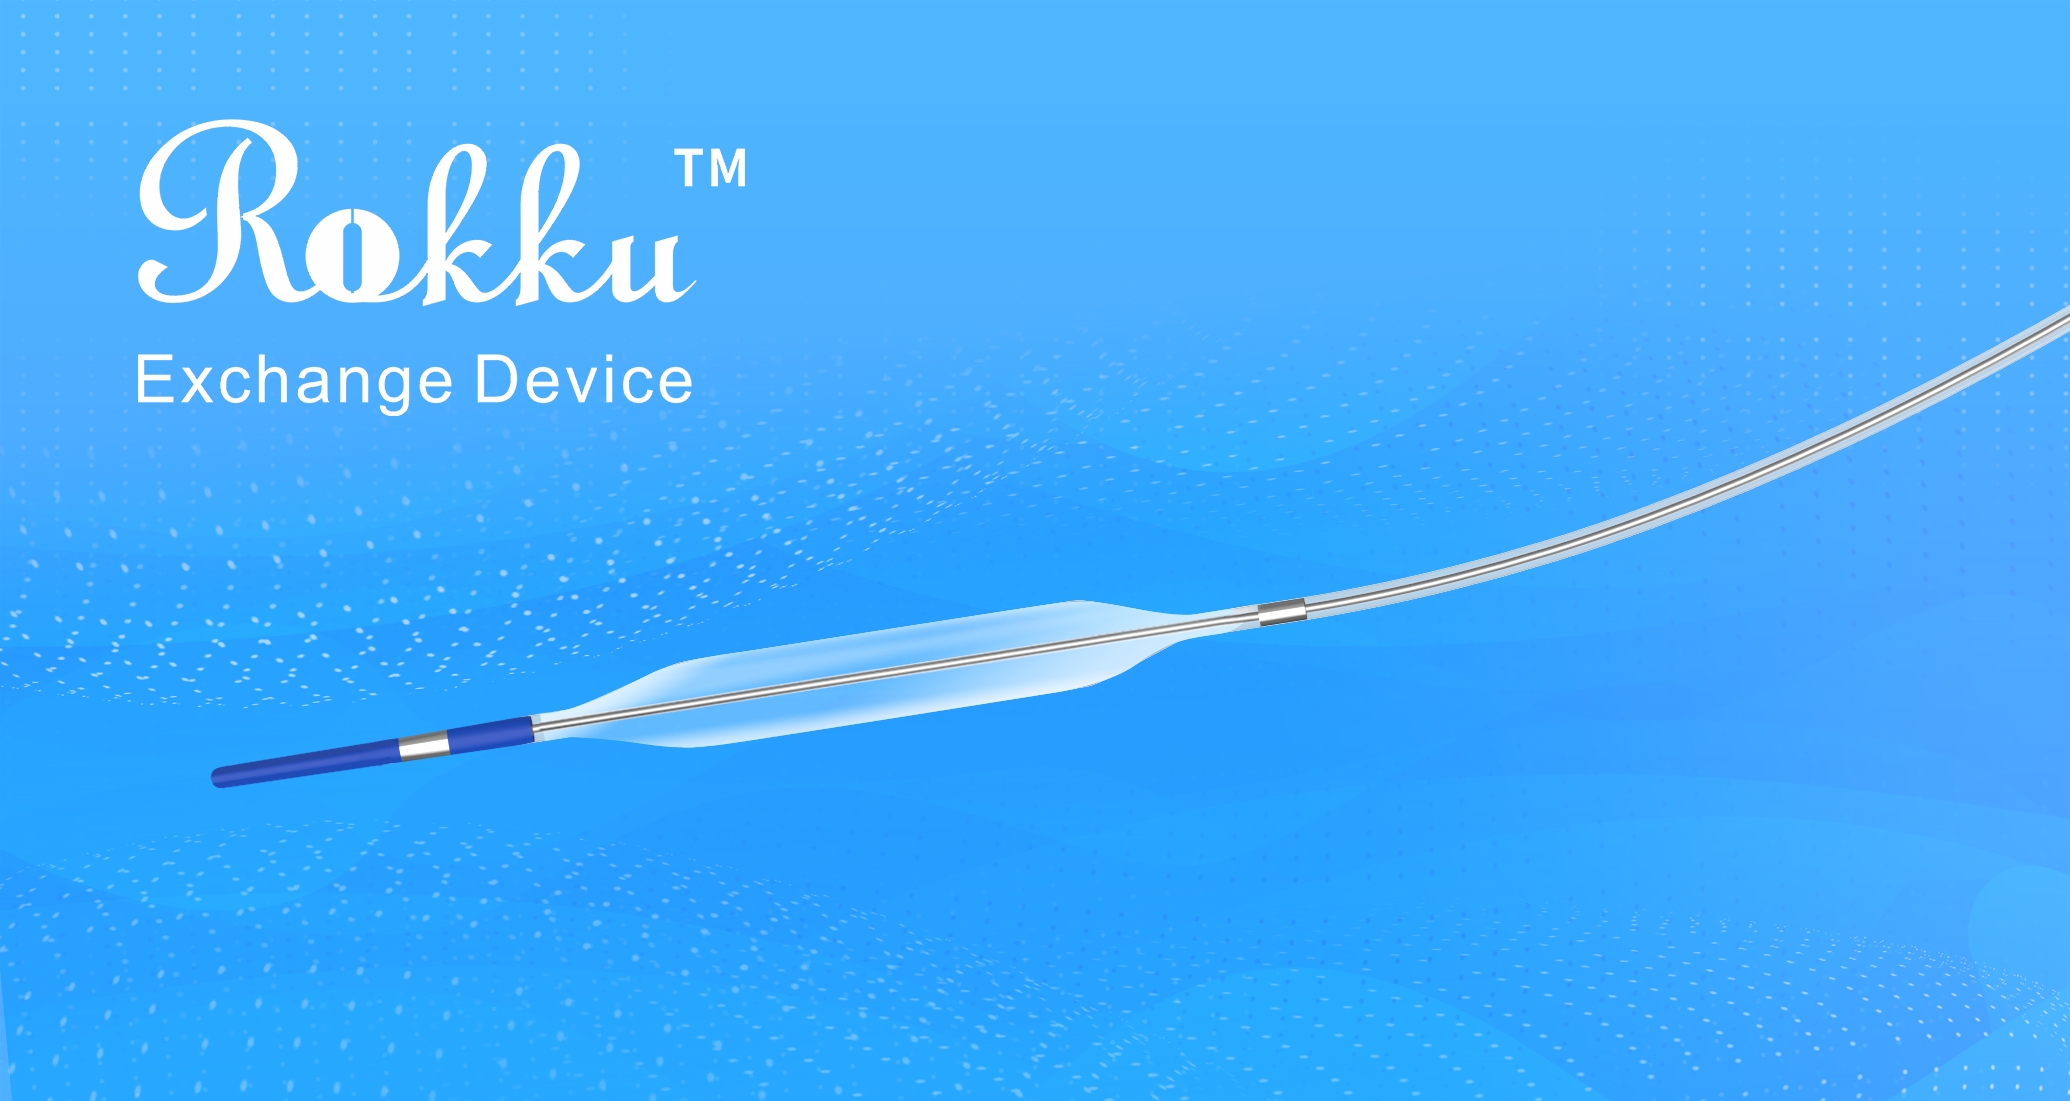 Brosmed社、Rokkuエクスチェンジデバイスが日本の厚生労働省から市場参入許可を取得したと発表